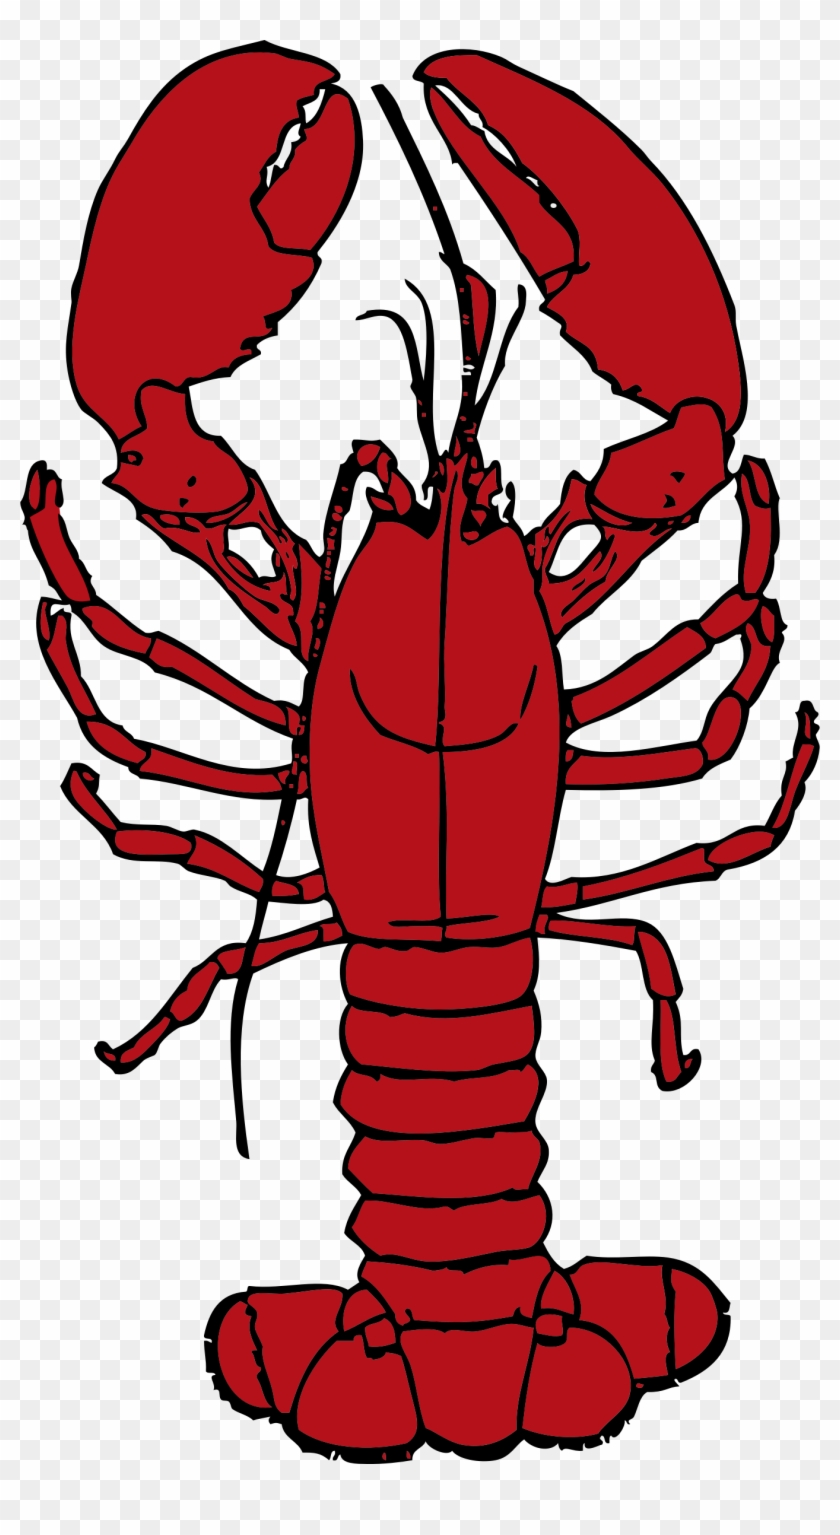 Red Lobster Clip Art - Red Lobster Clip Art #48489